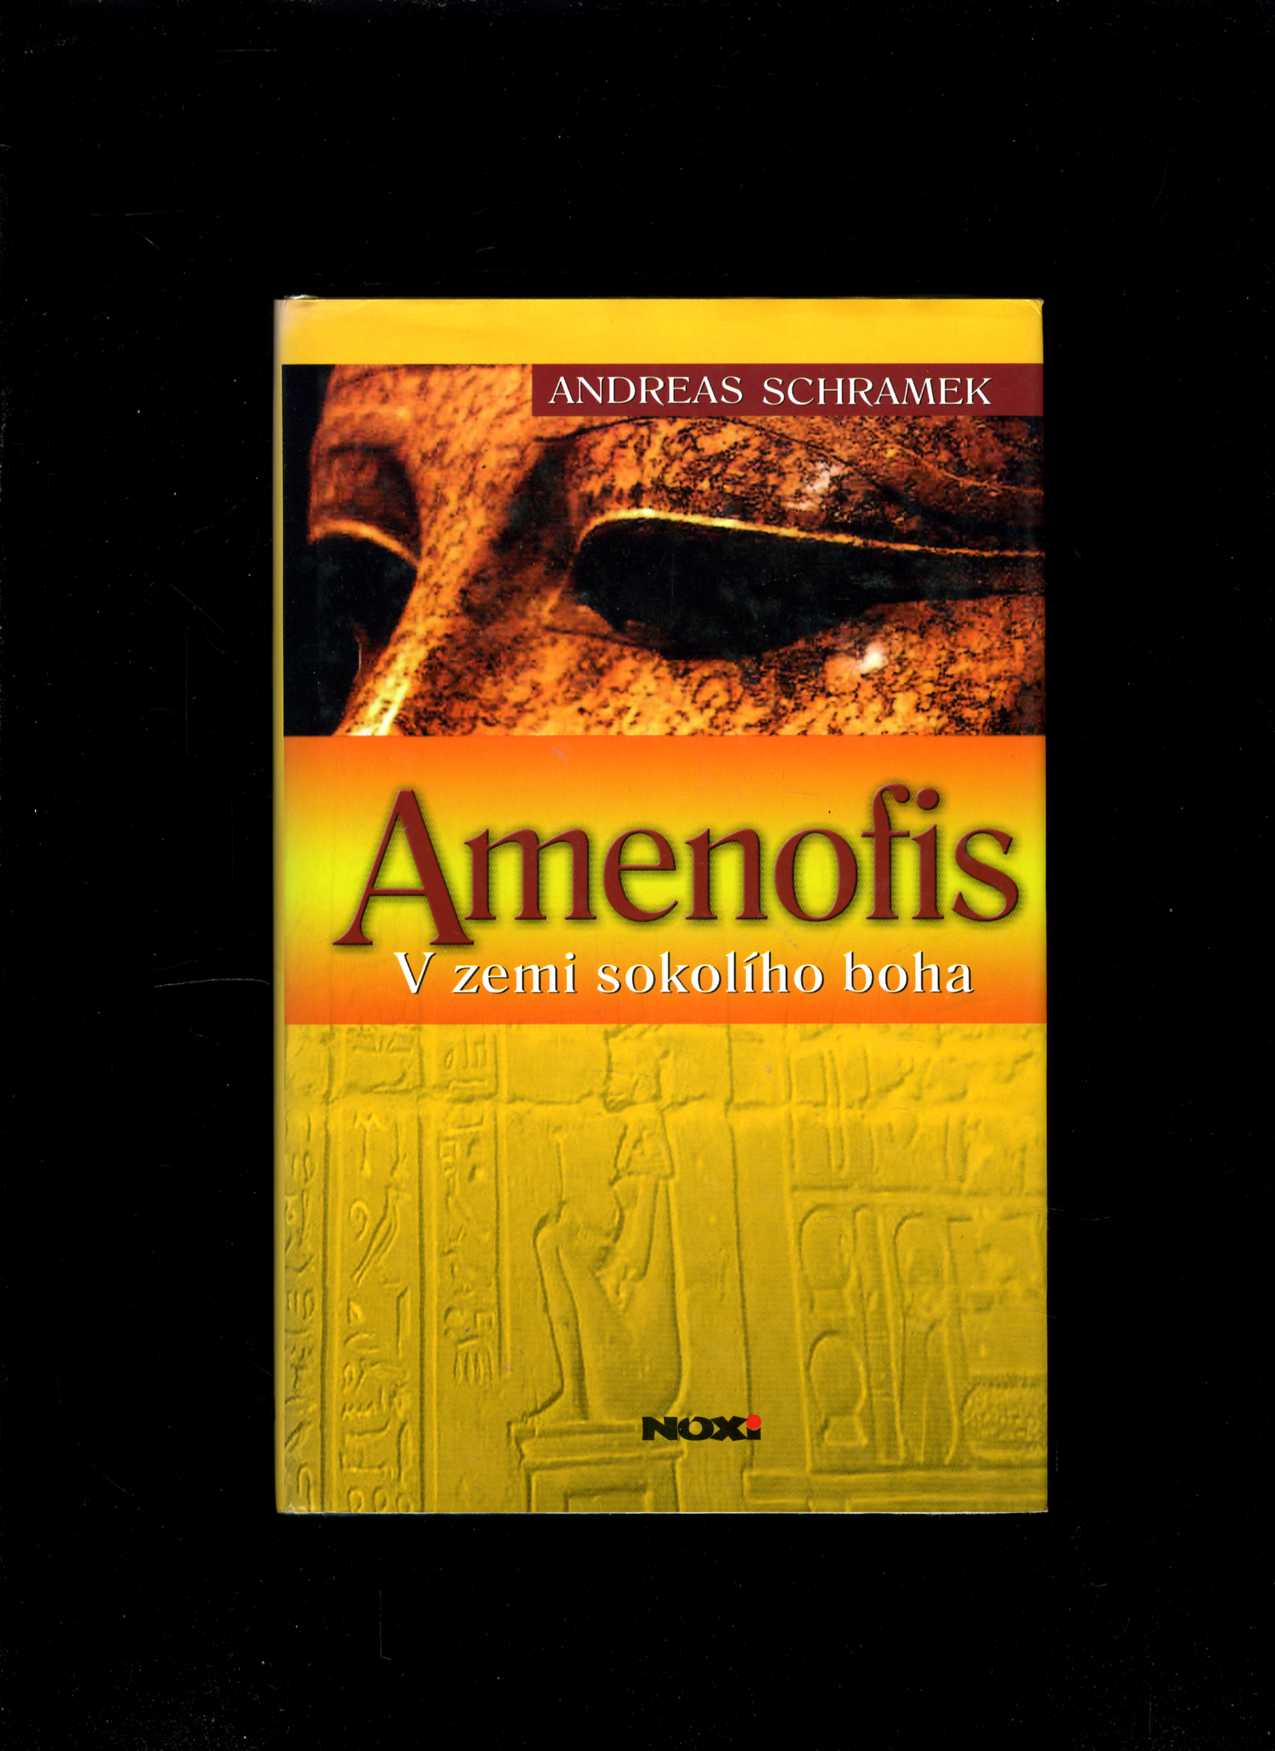 Amenofis (Andreas Schramek)